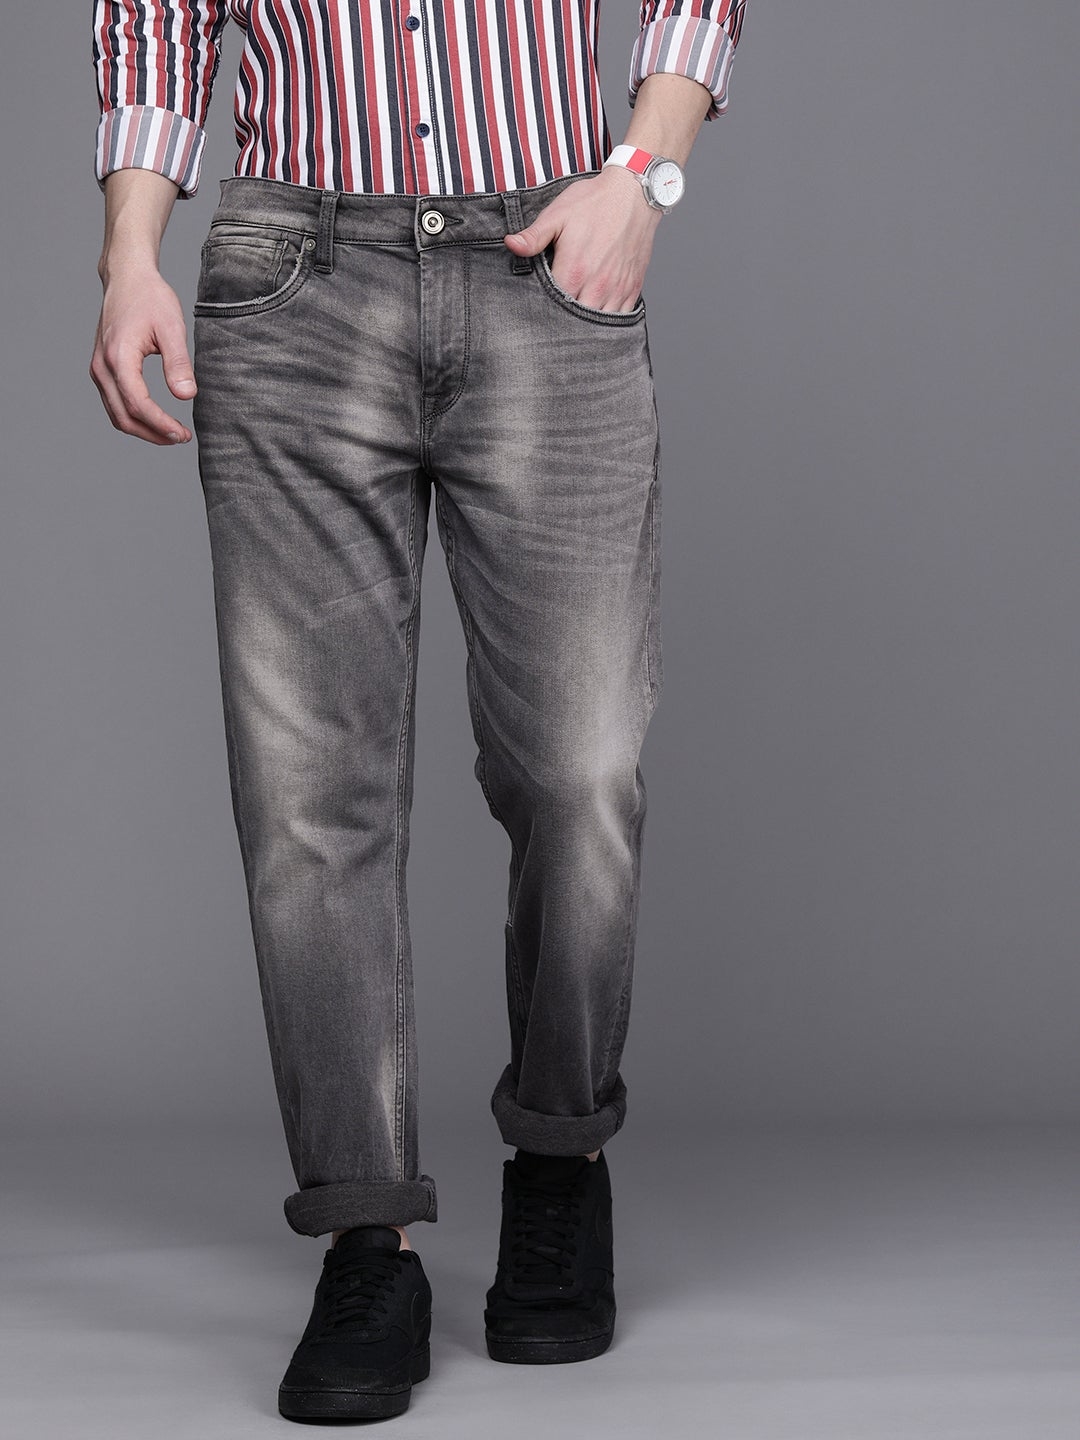 Voi Jeans | Men's Grey Slim Tapered Stretchable Jeans (VOJN1643)